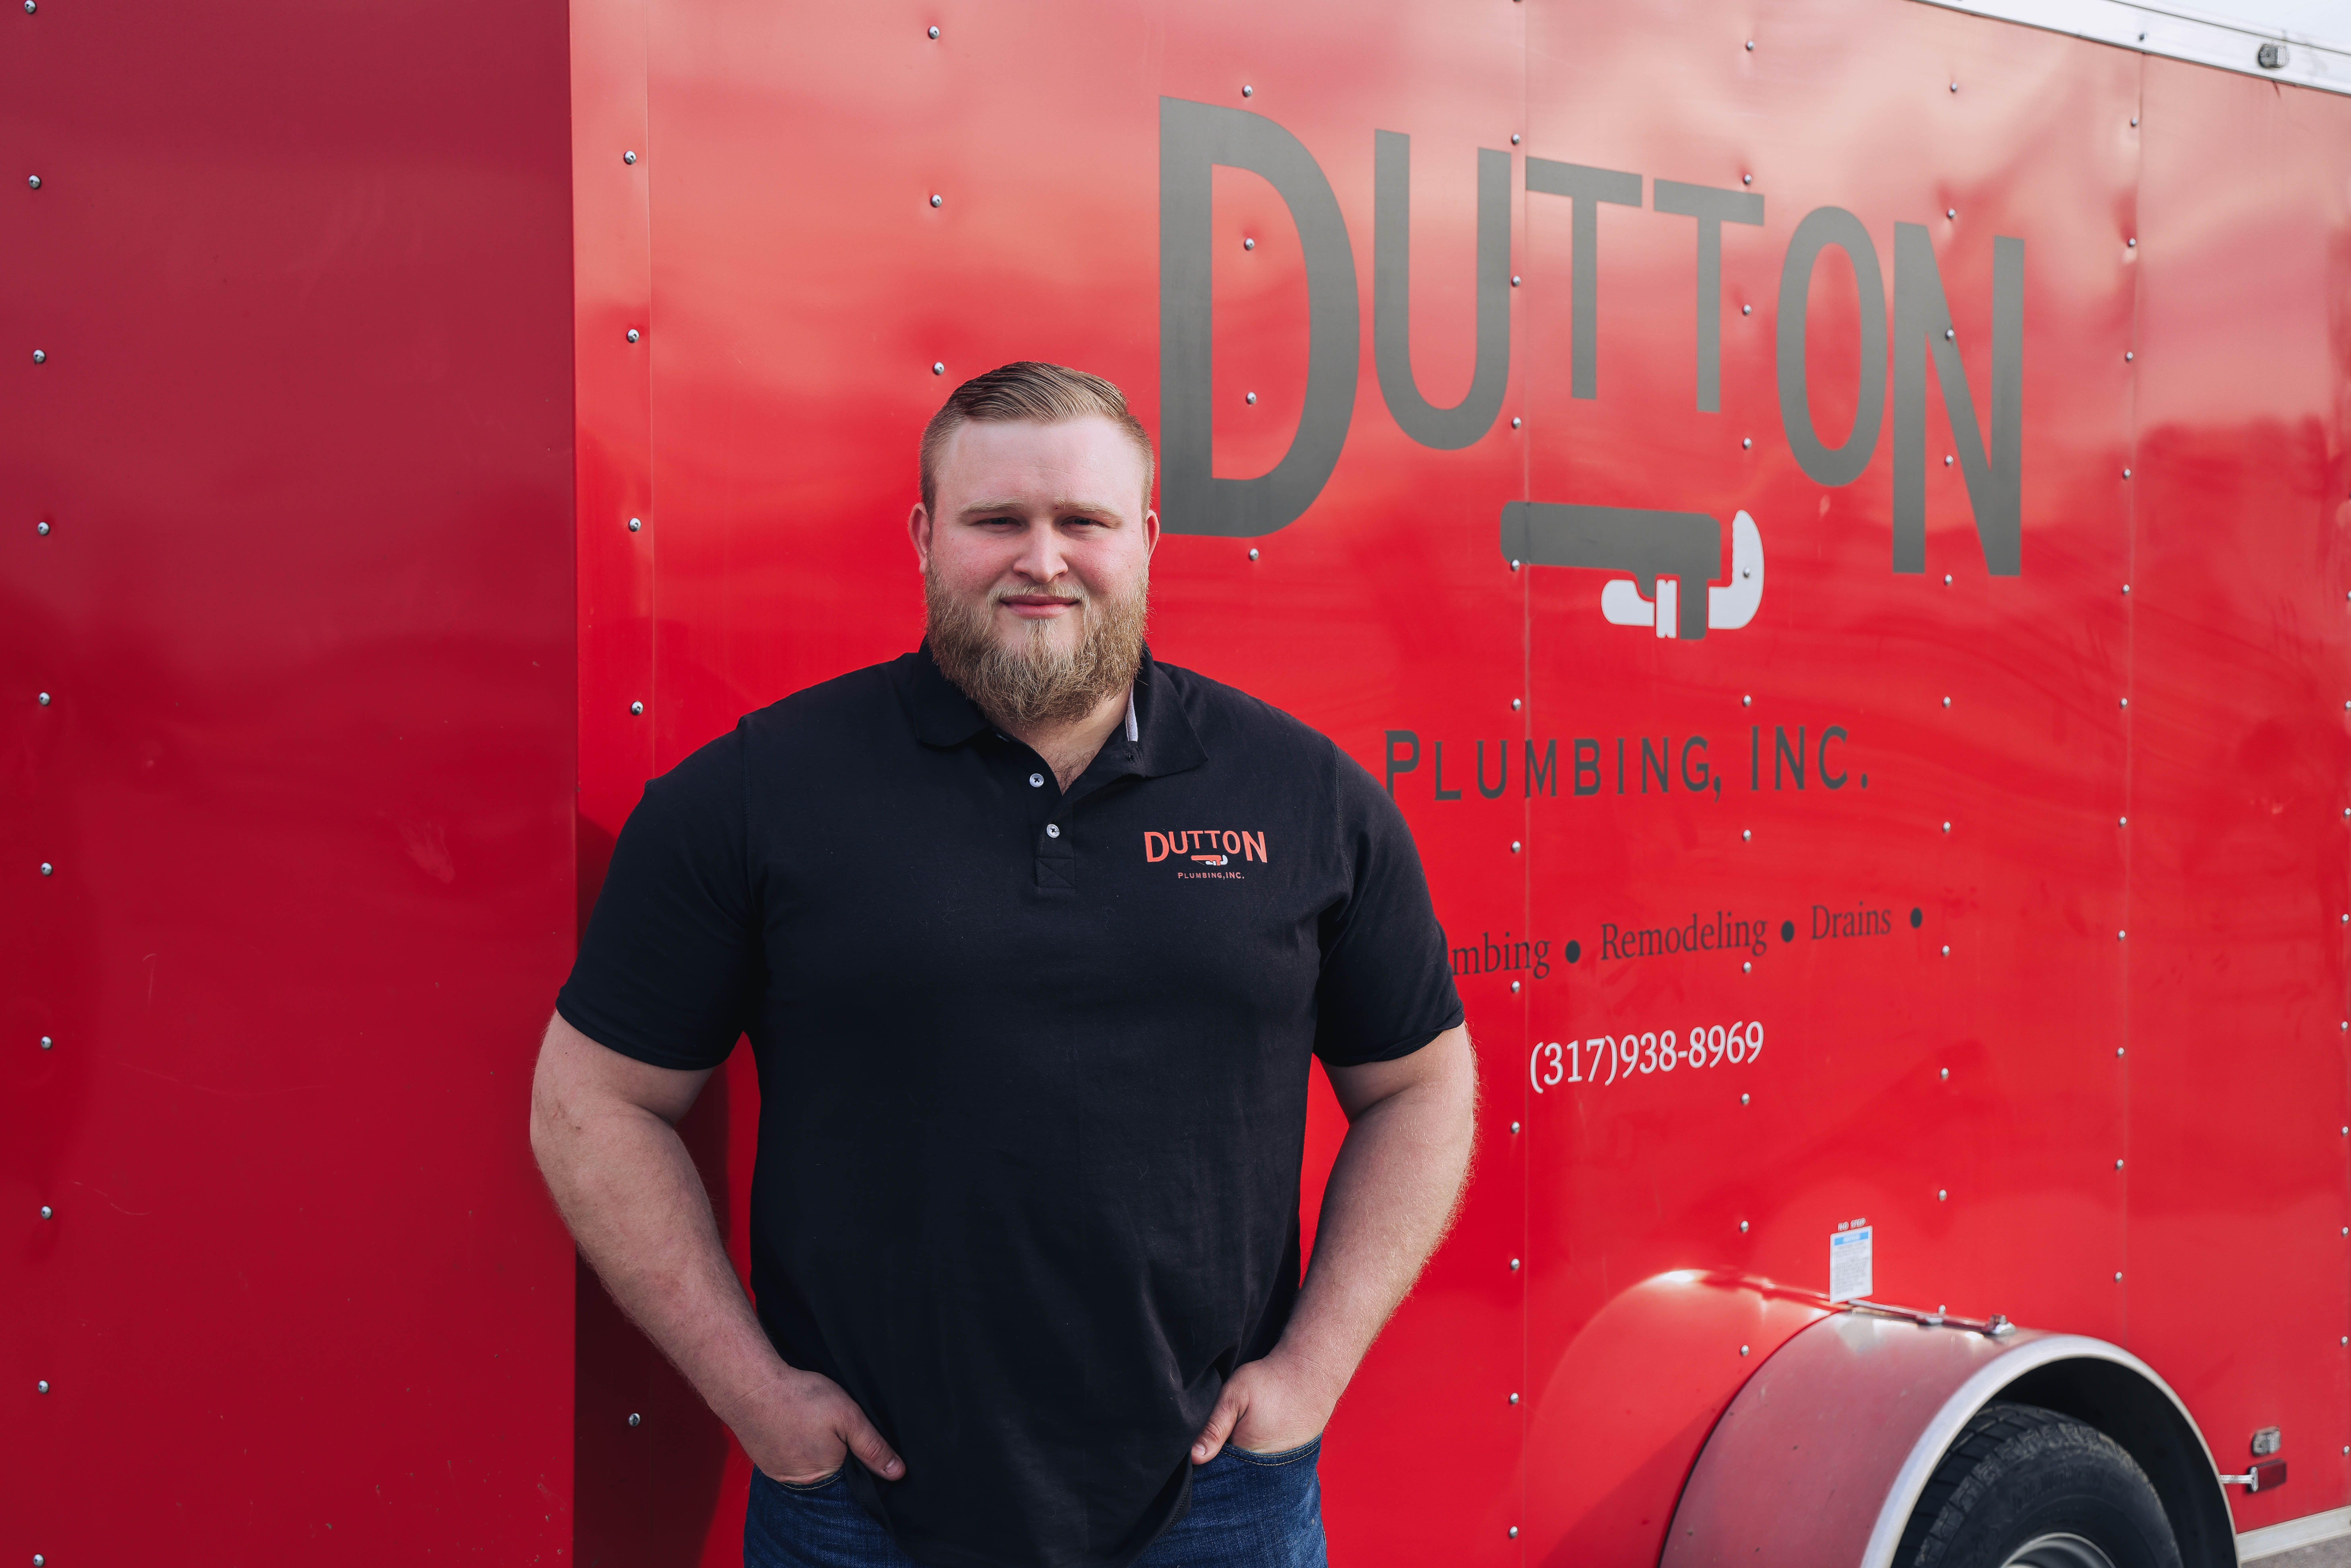 Josh Dutton at Dutton Plumbing, Inc. in Whiteland, IN